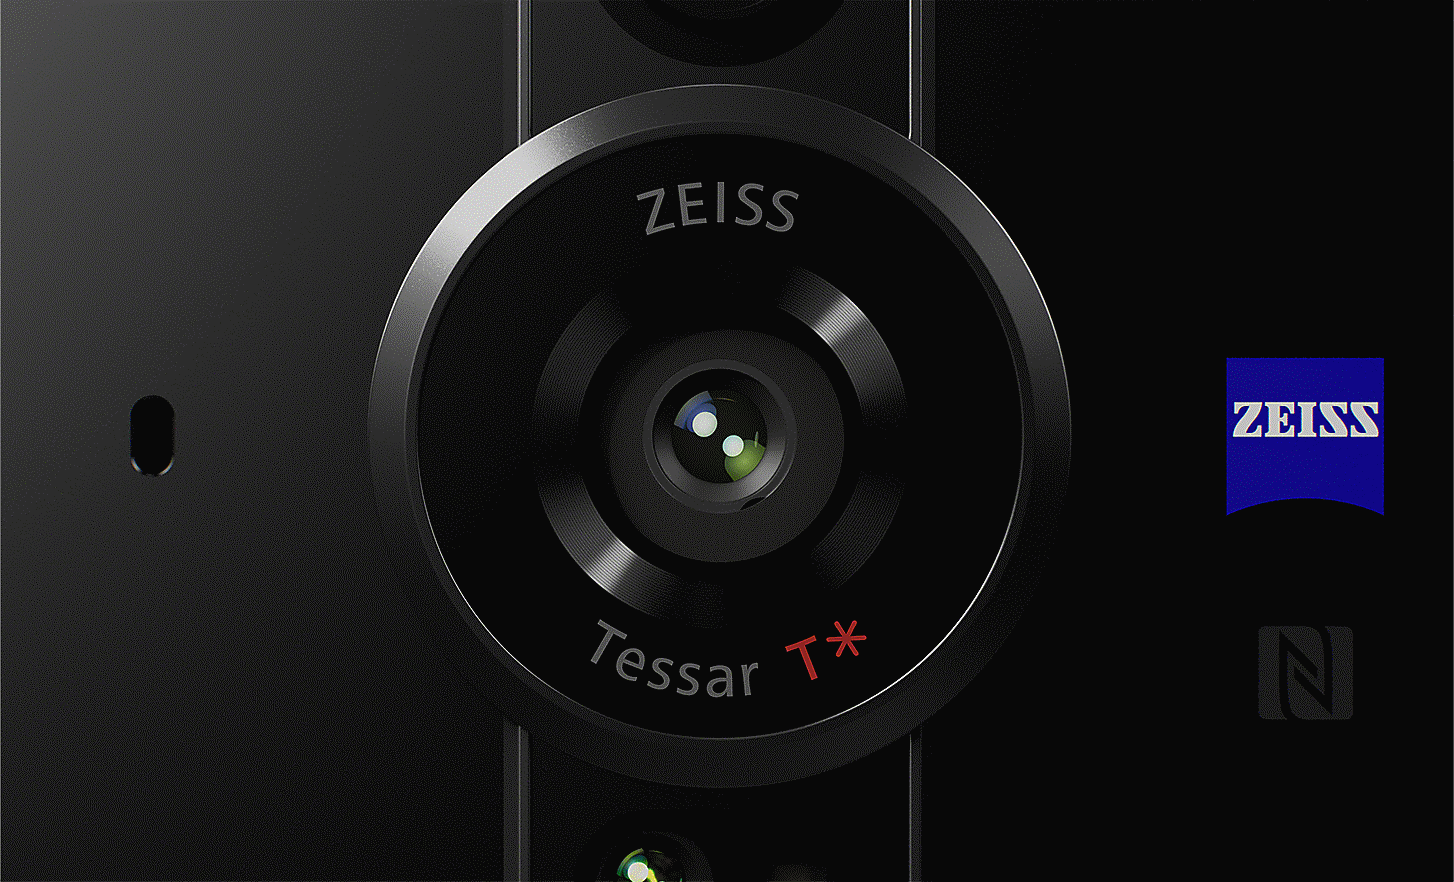 Ảnh cận cảnh ống kính ZEISS Tessar T* với logo ZEISS